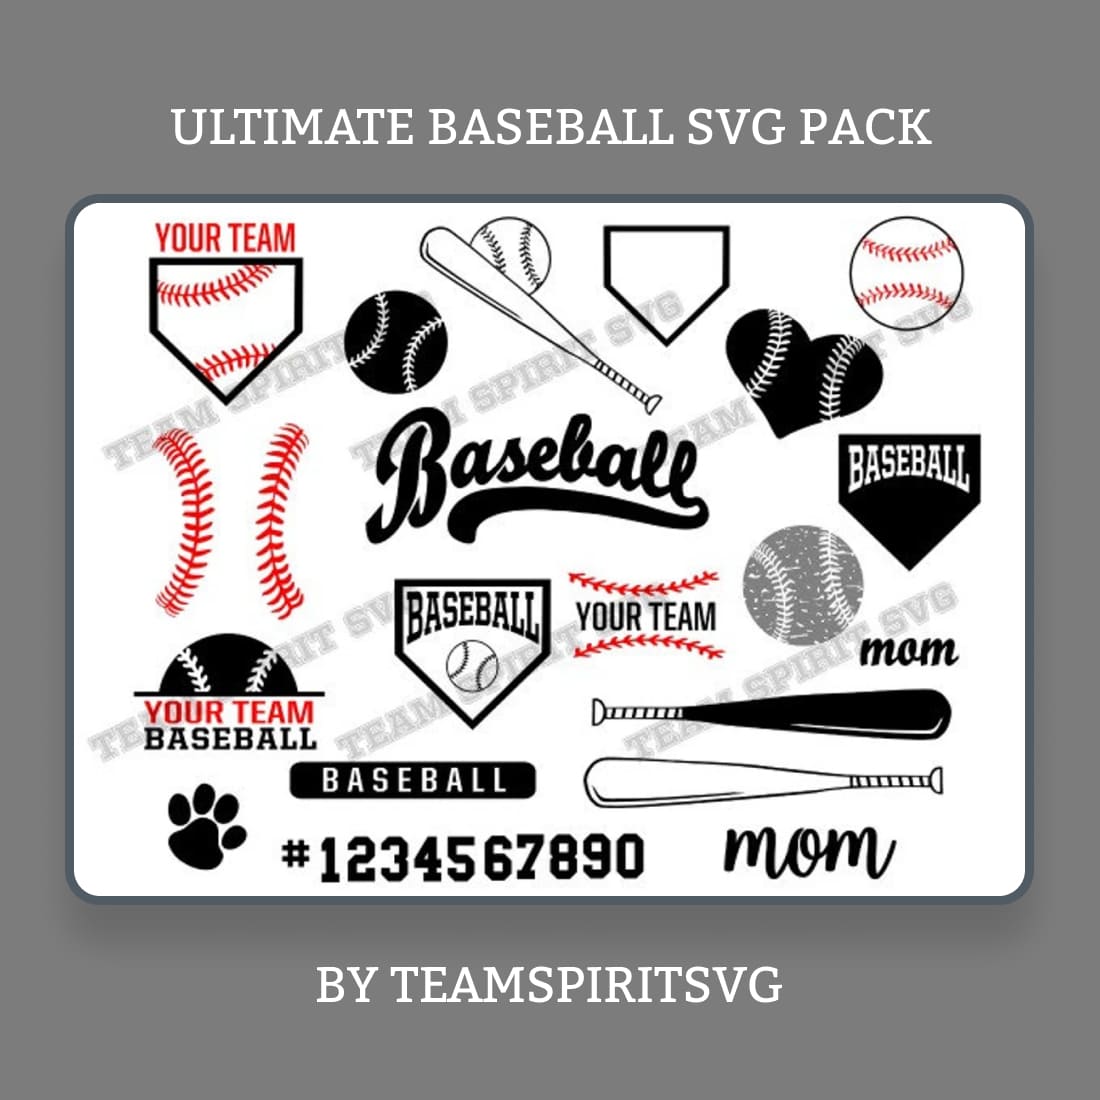 Ultimate Baseball SVG Pack.